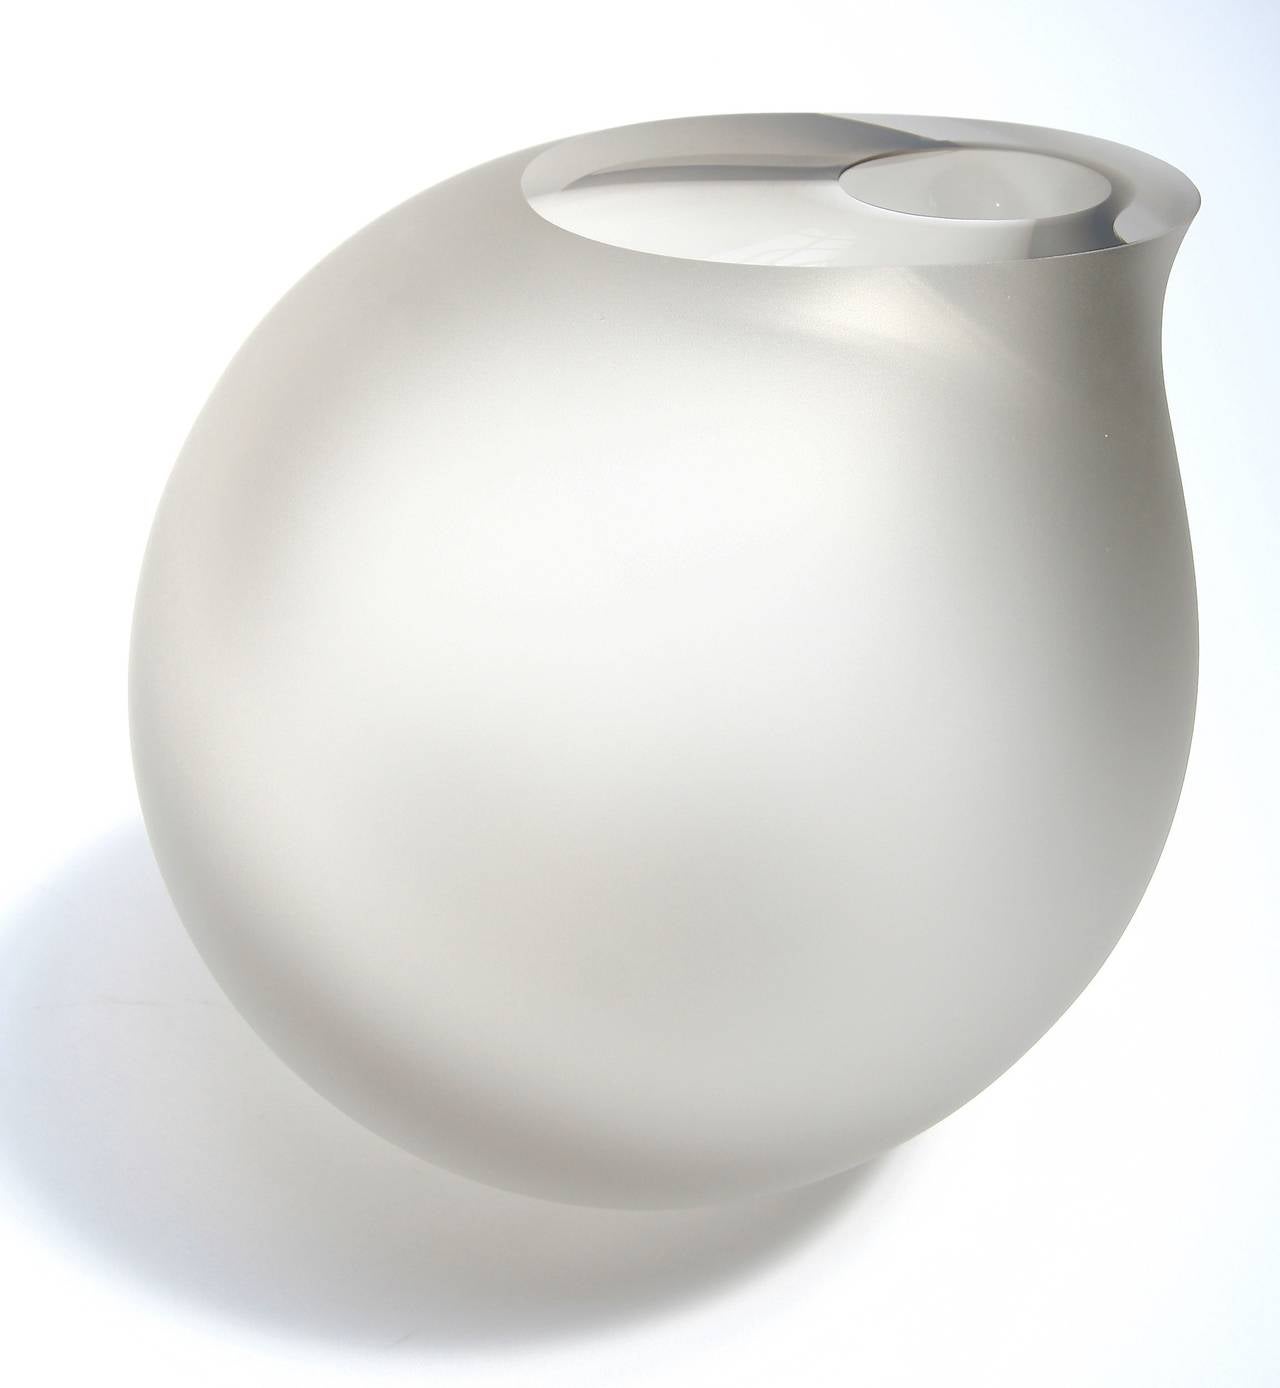 Vase ou sculpture de taille moyenne en verre Vaza d'Anna Torfs, de couleur fumée avec finition sablée. Disponible dans d'autres couleurs et tailles. Seule la finition poncée est disponible. Clair n'est plus disponible.